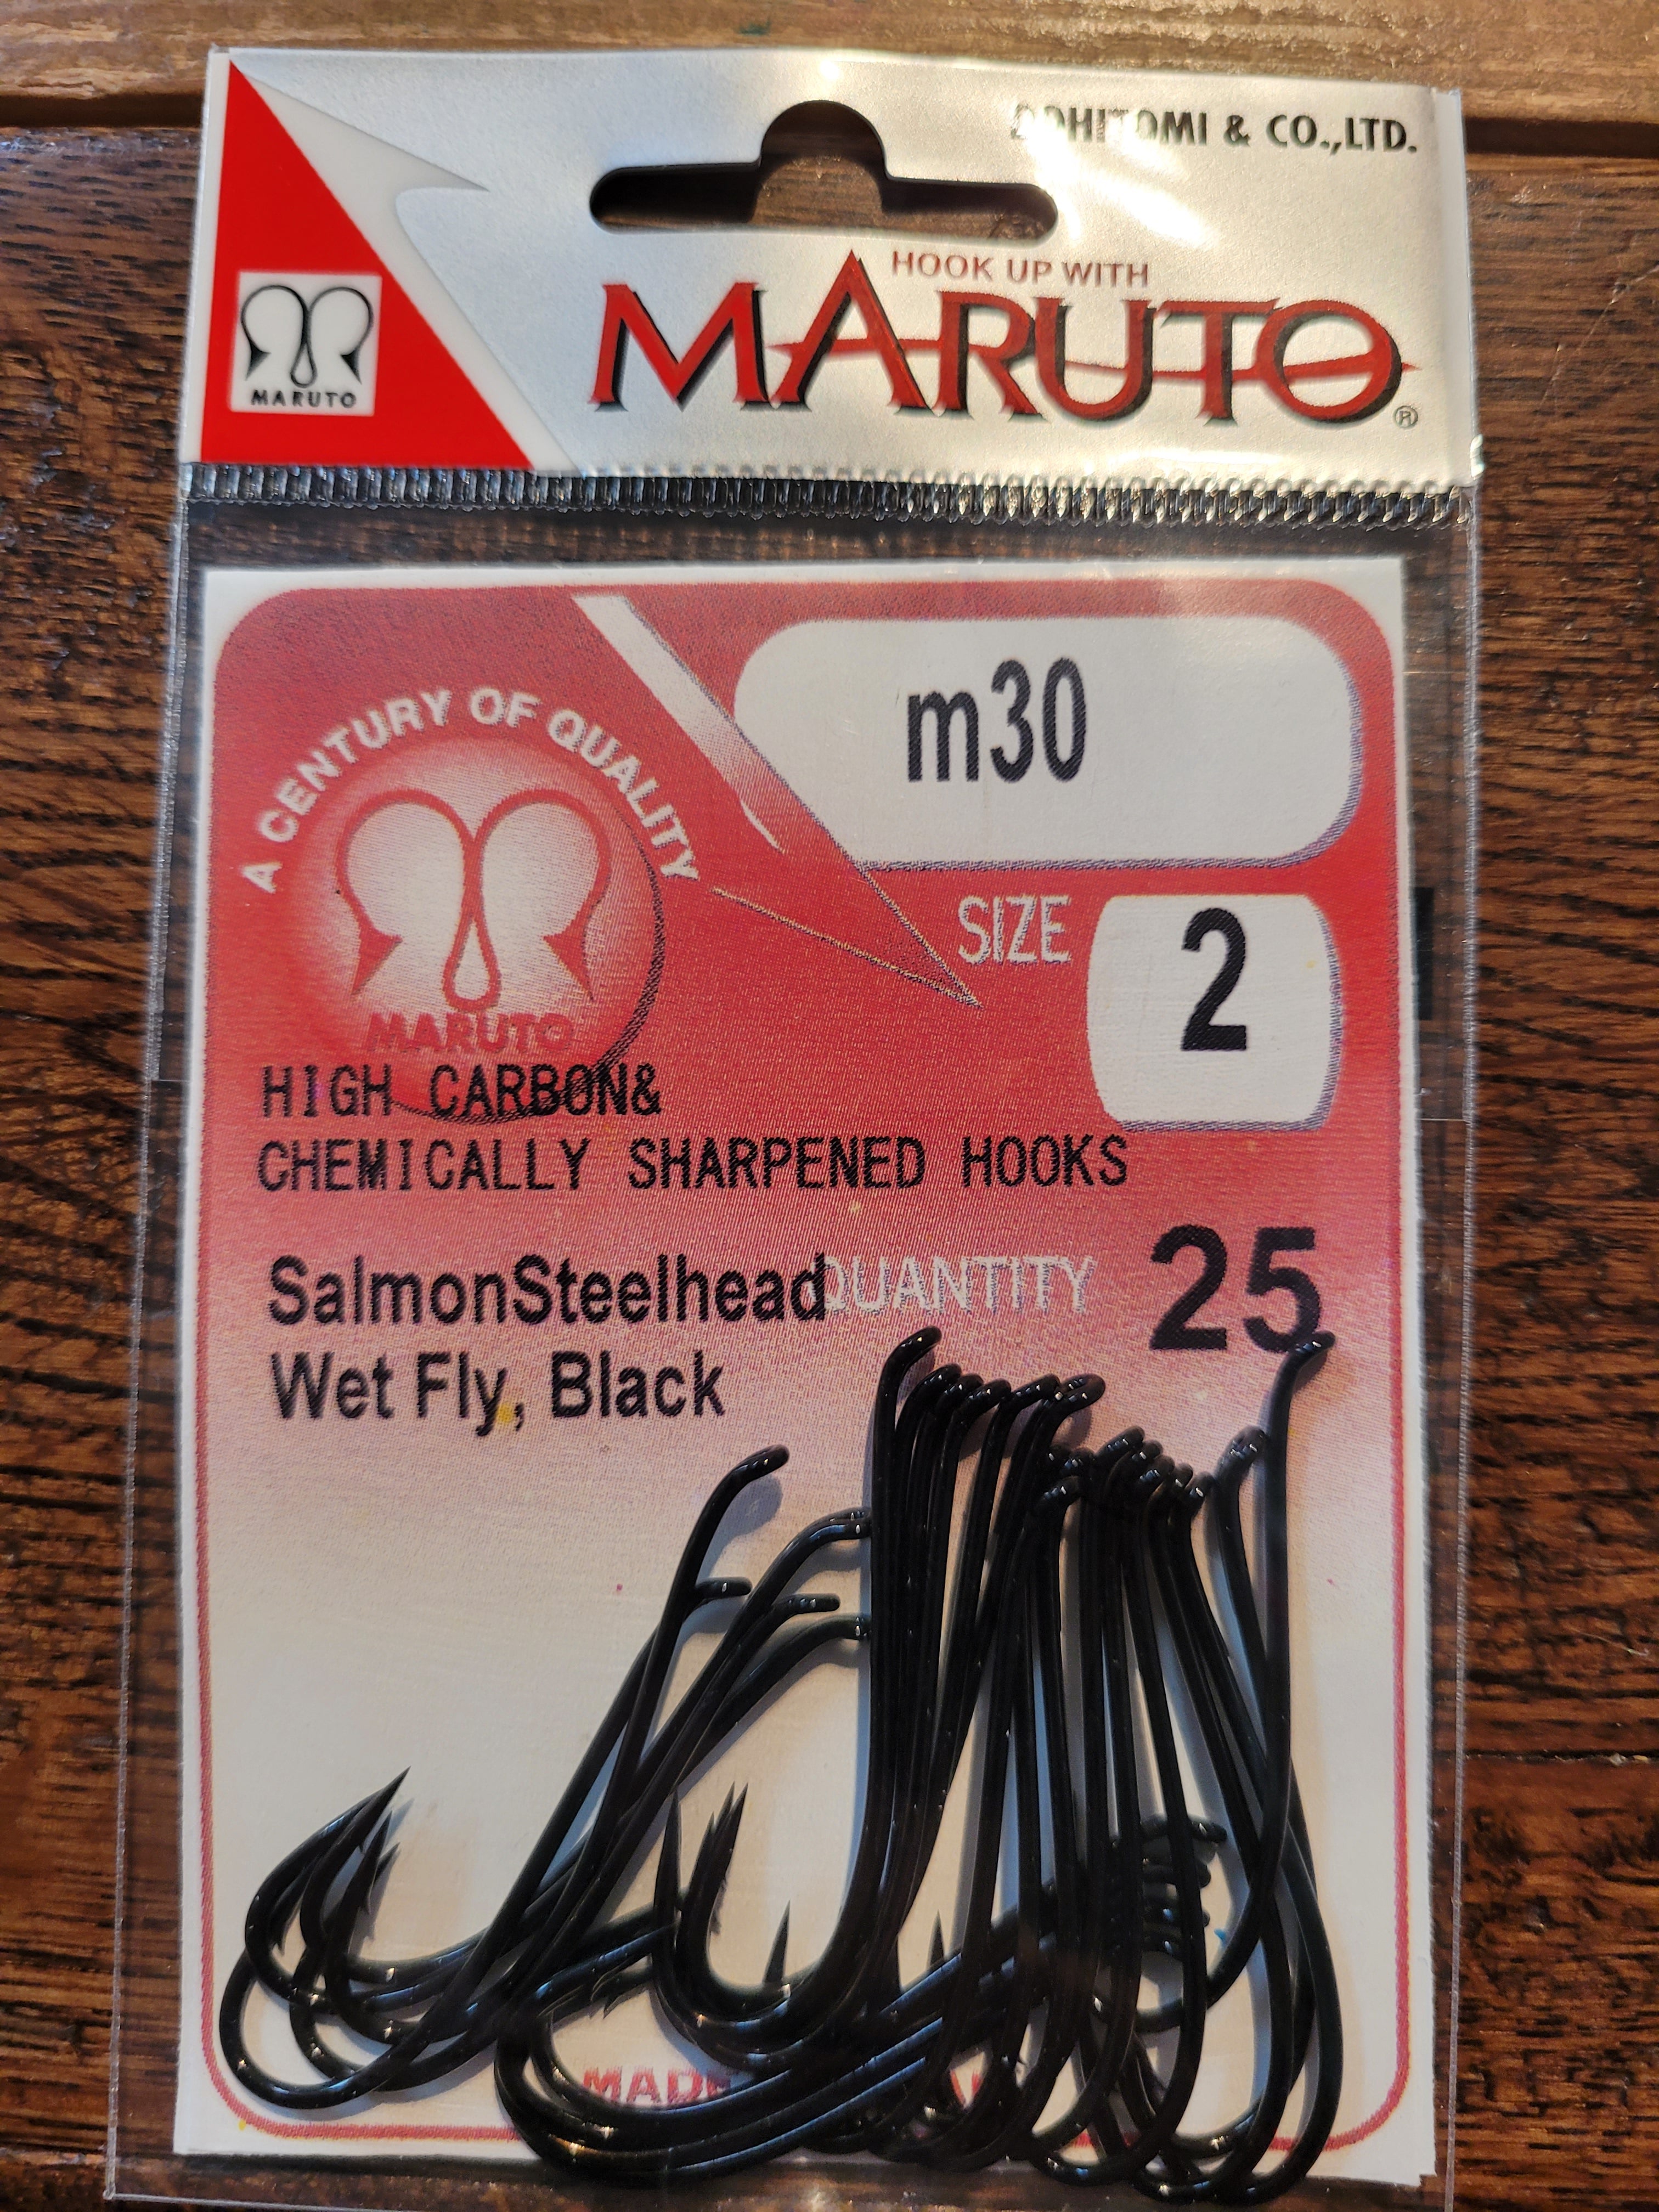 Maruto M30 Hooks